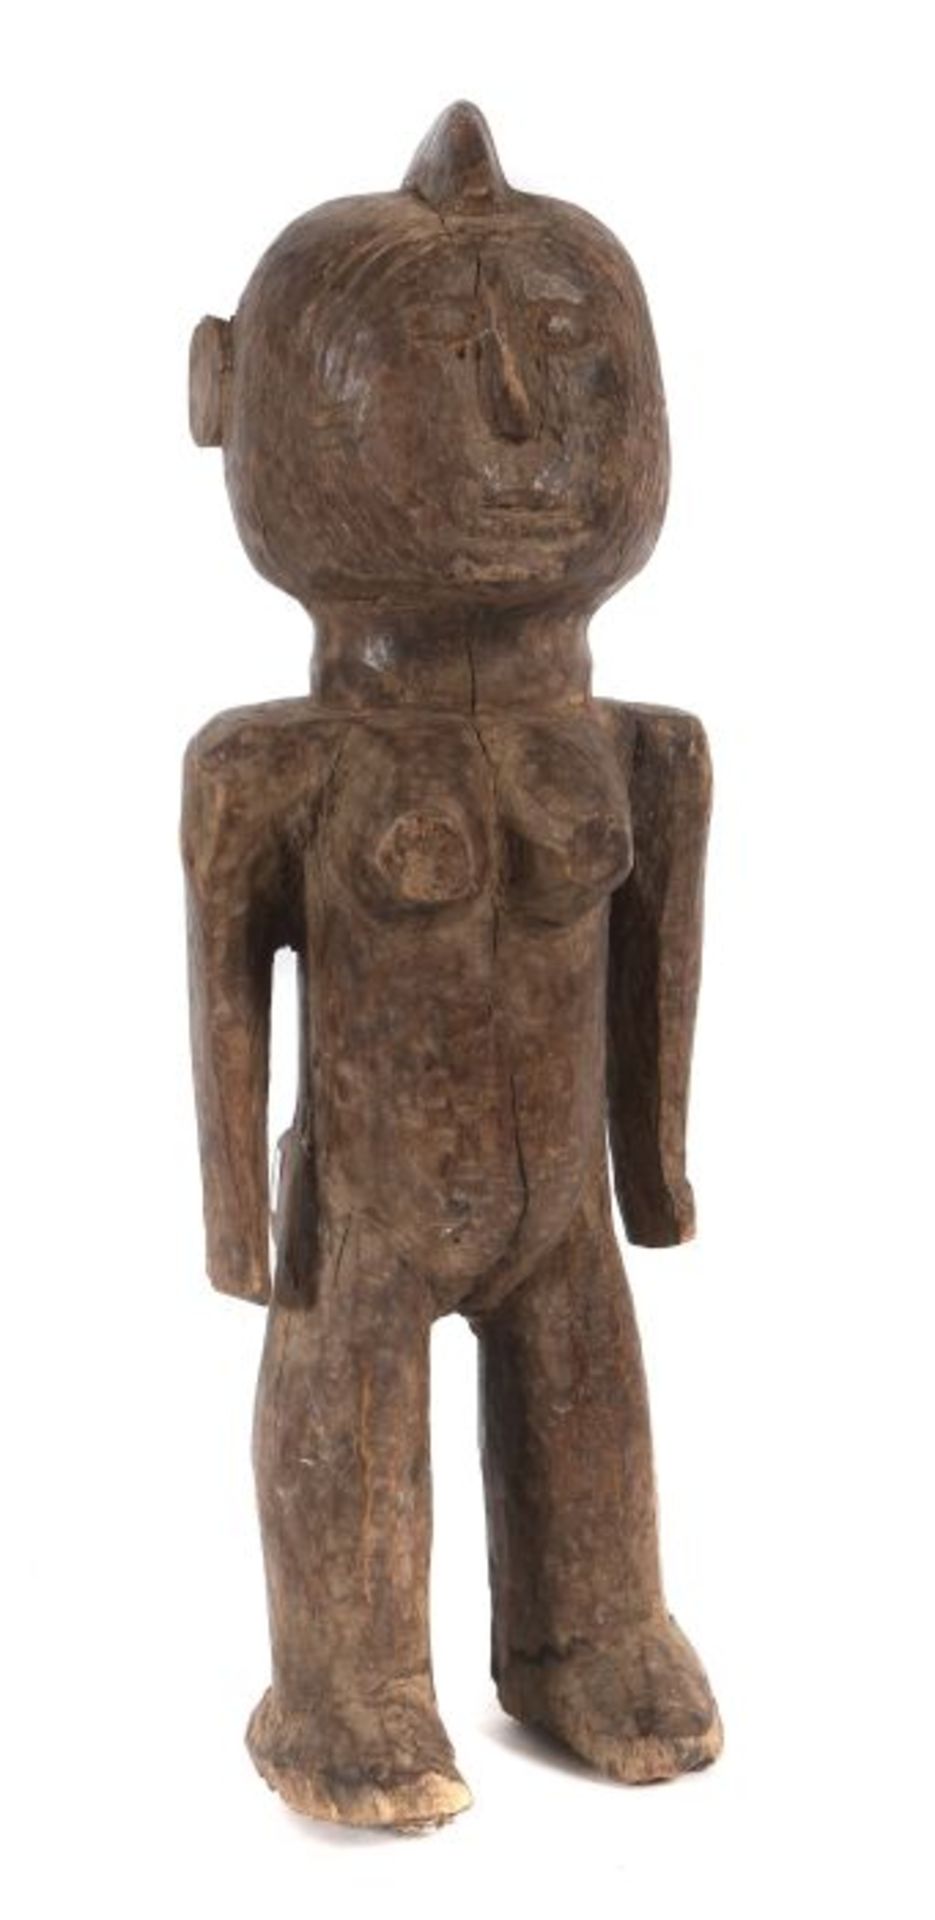 Weibliche Standfigur der MossiBurkina Faso, Holz, H: 48 cm.- - -25.00 % buyer's premium on the